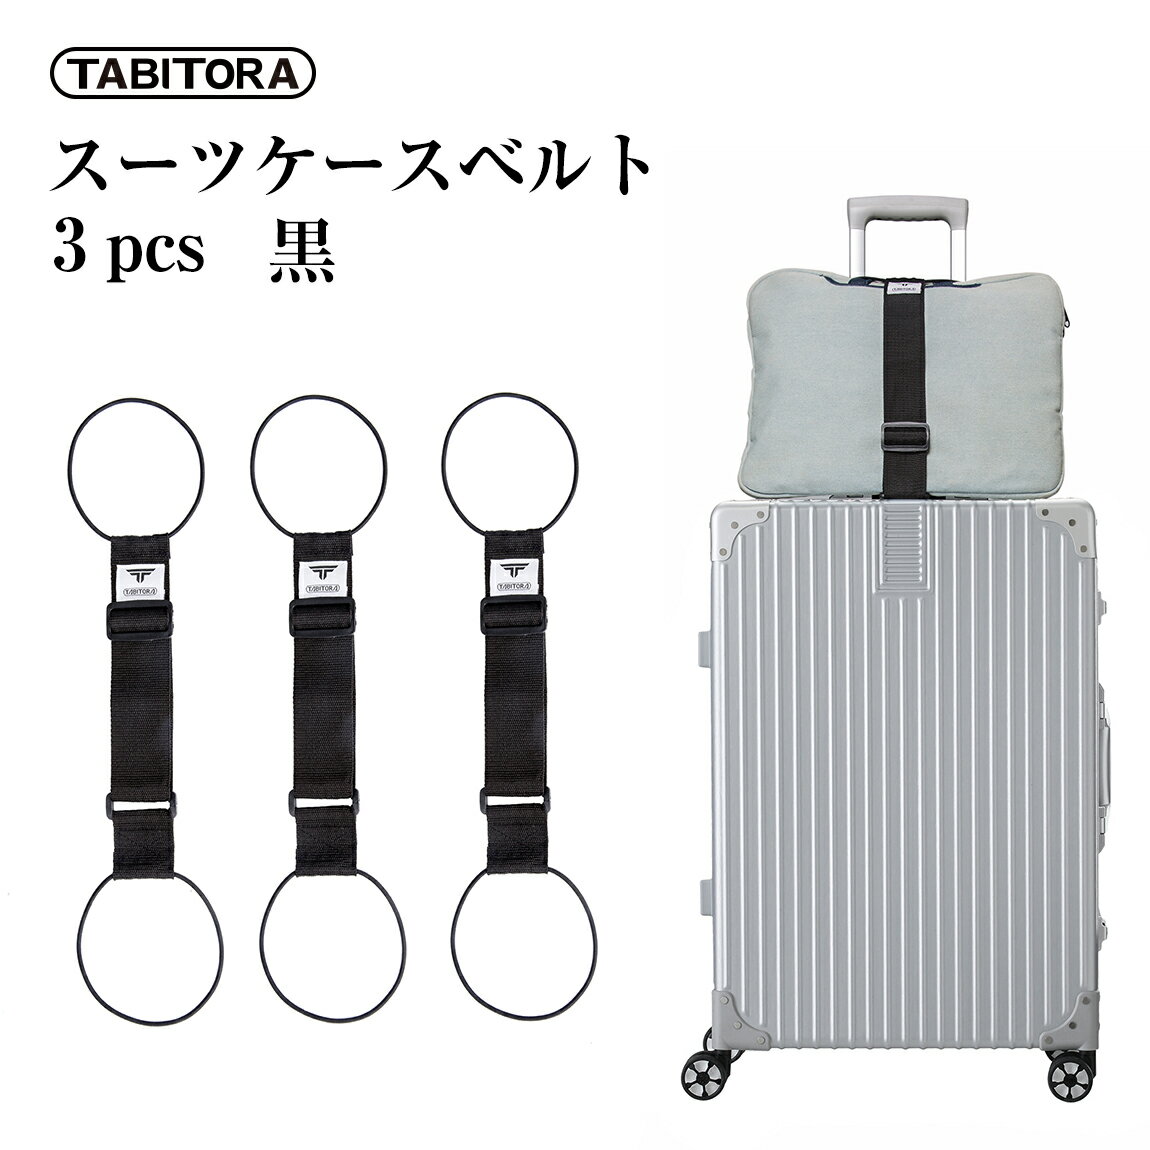 TABITORA(タビトラ) バッグとめるベルト 旅行用品/スーツケースベルト ブラック 57~75cm(調節可)×幅5cm 3PCS